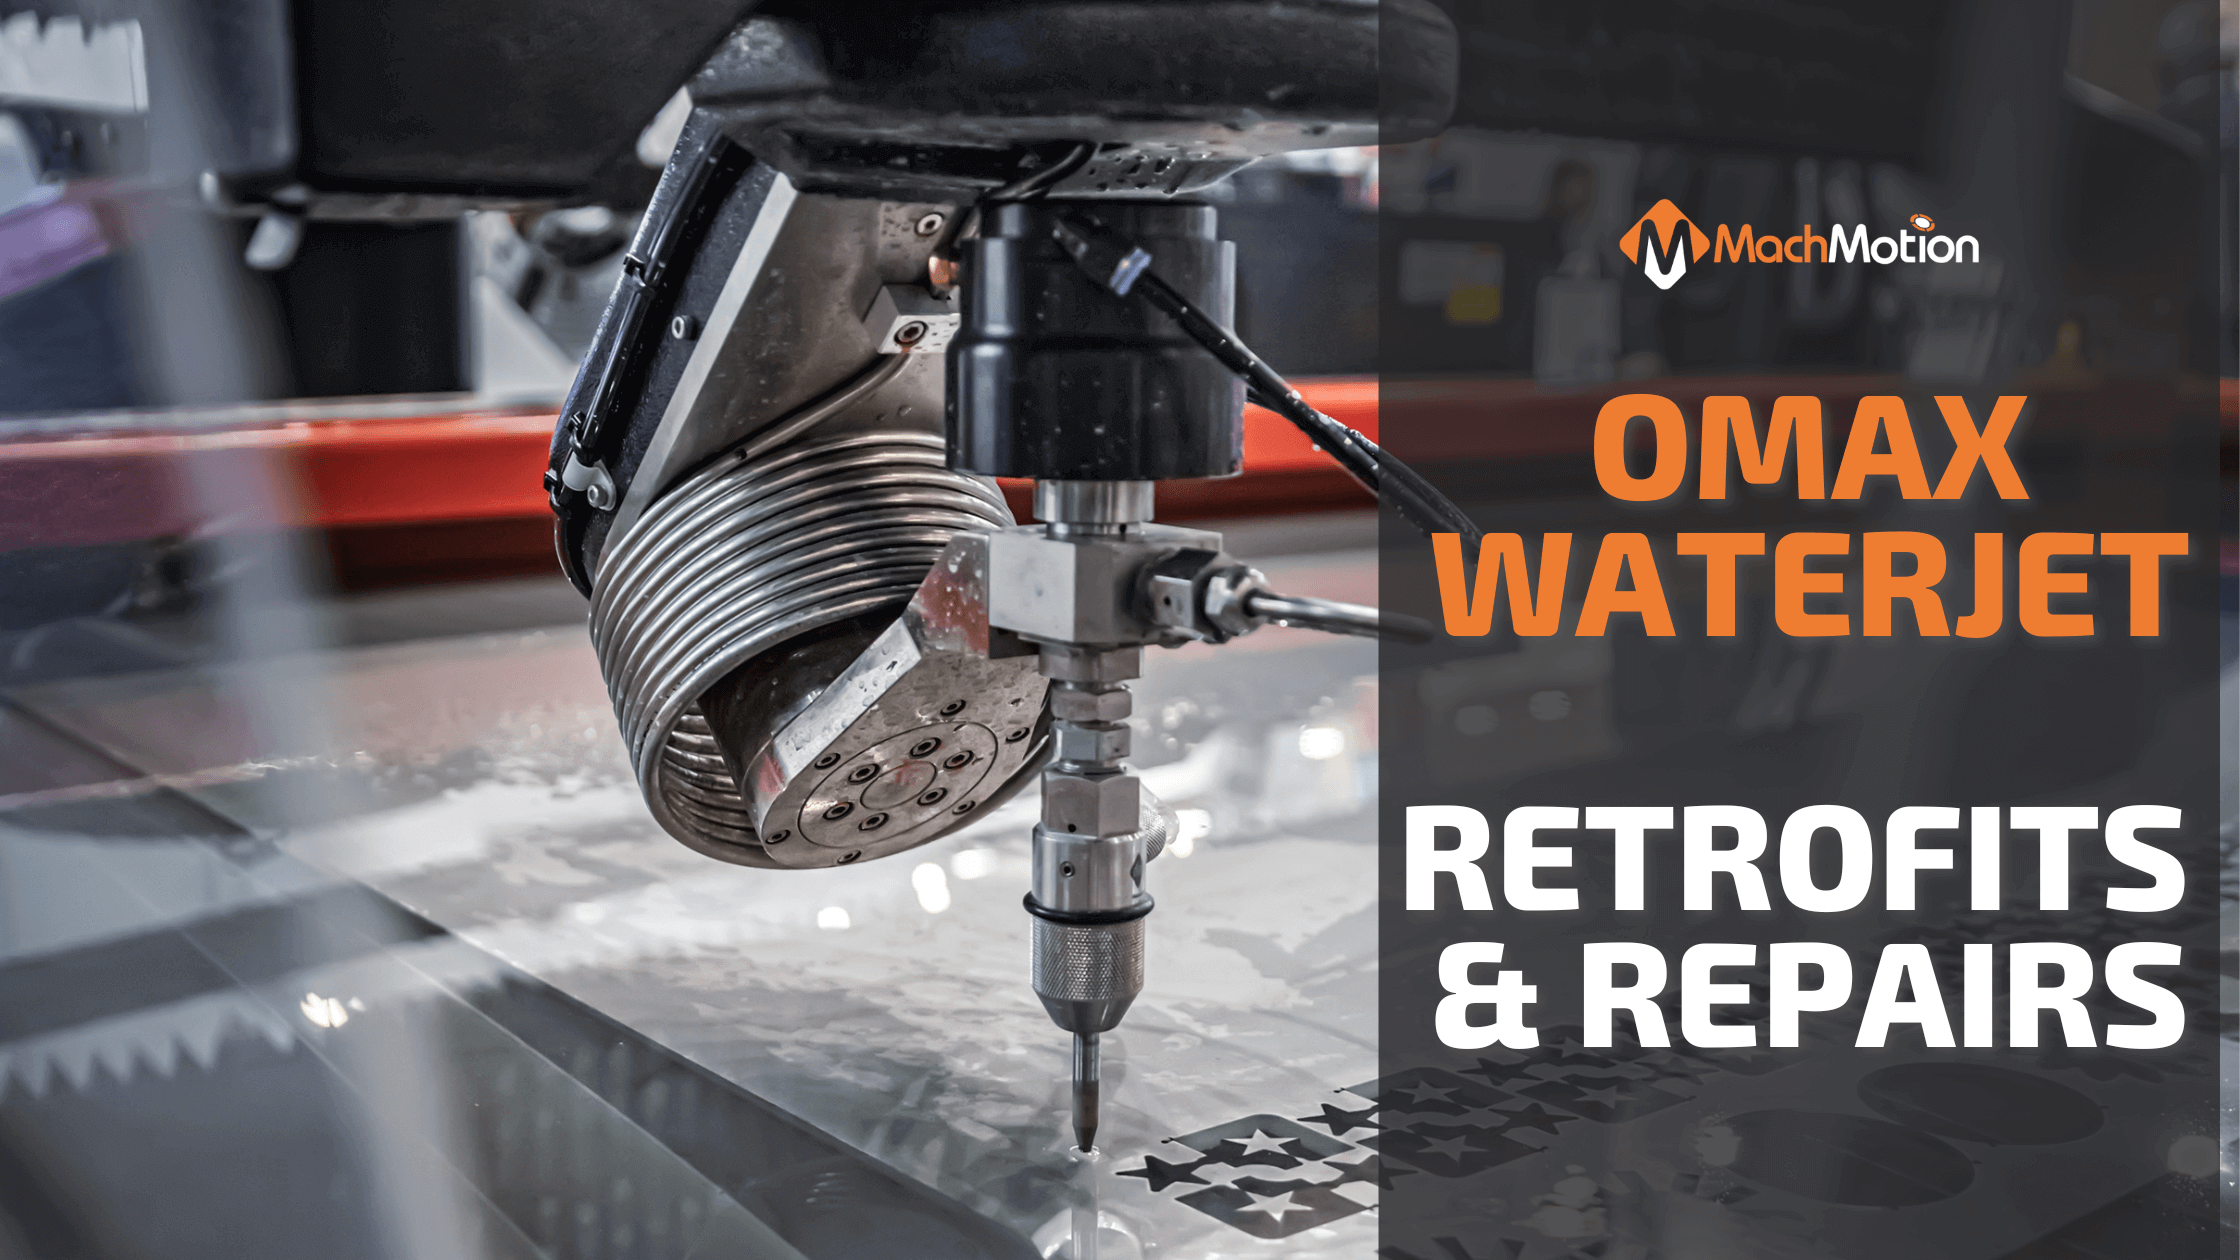 OMAX Waterjet Retrofits and Repairs